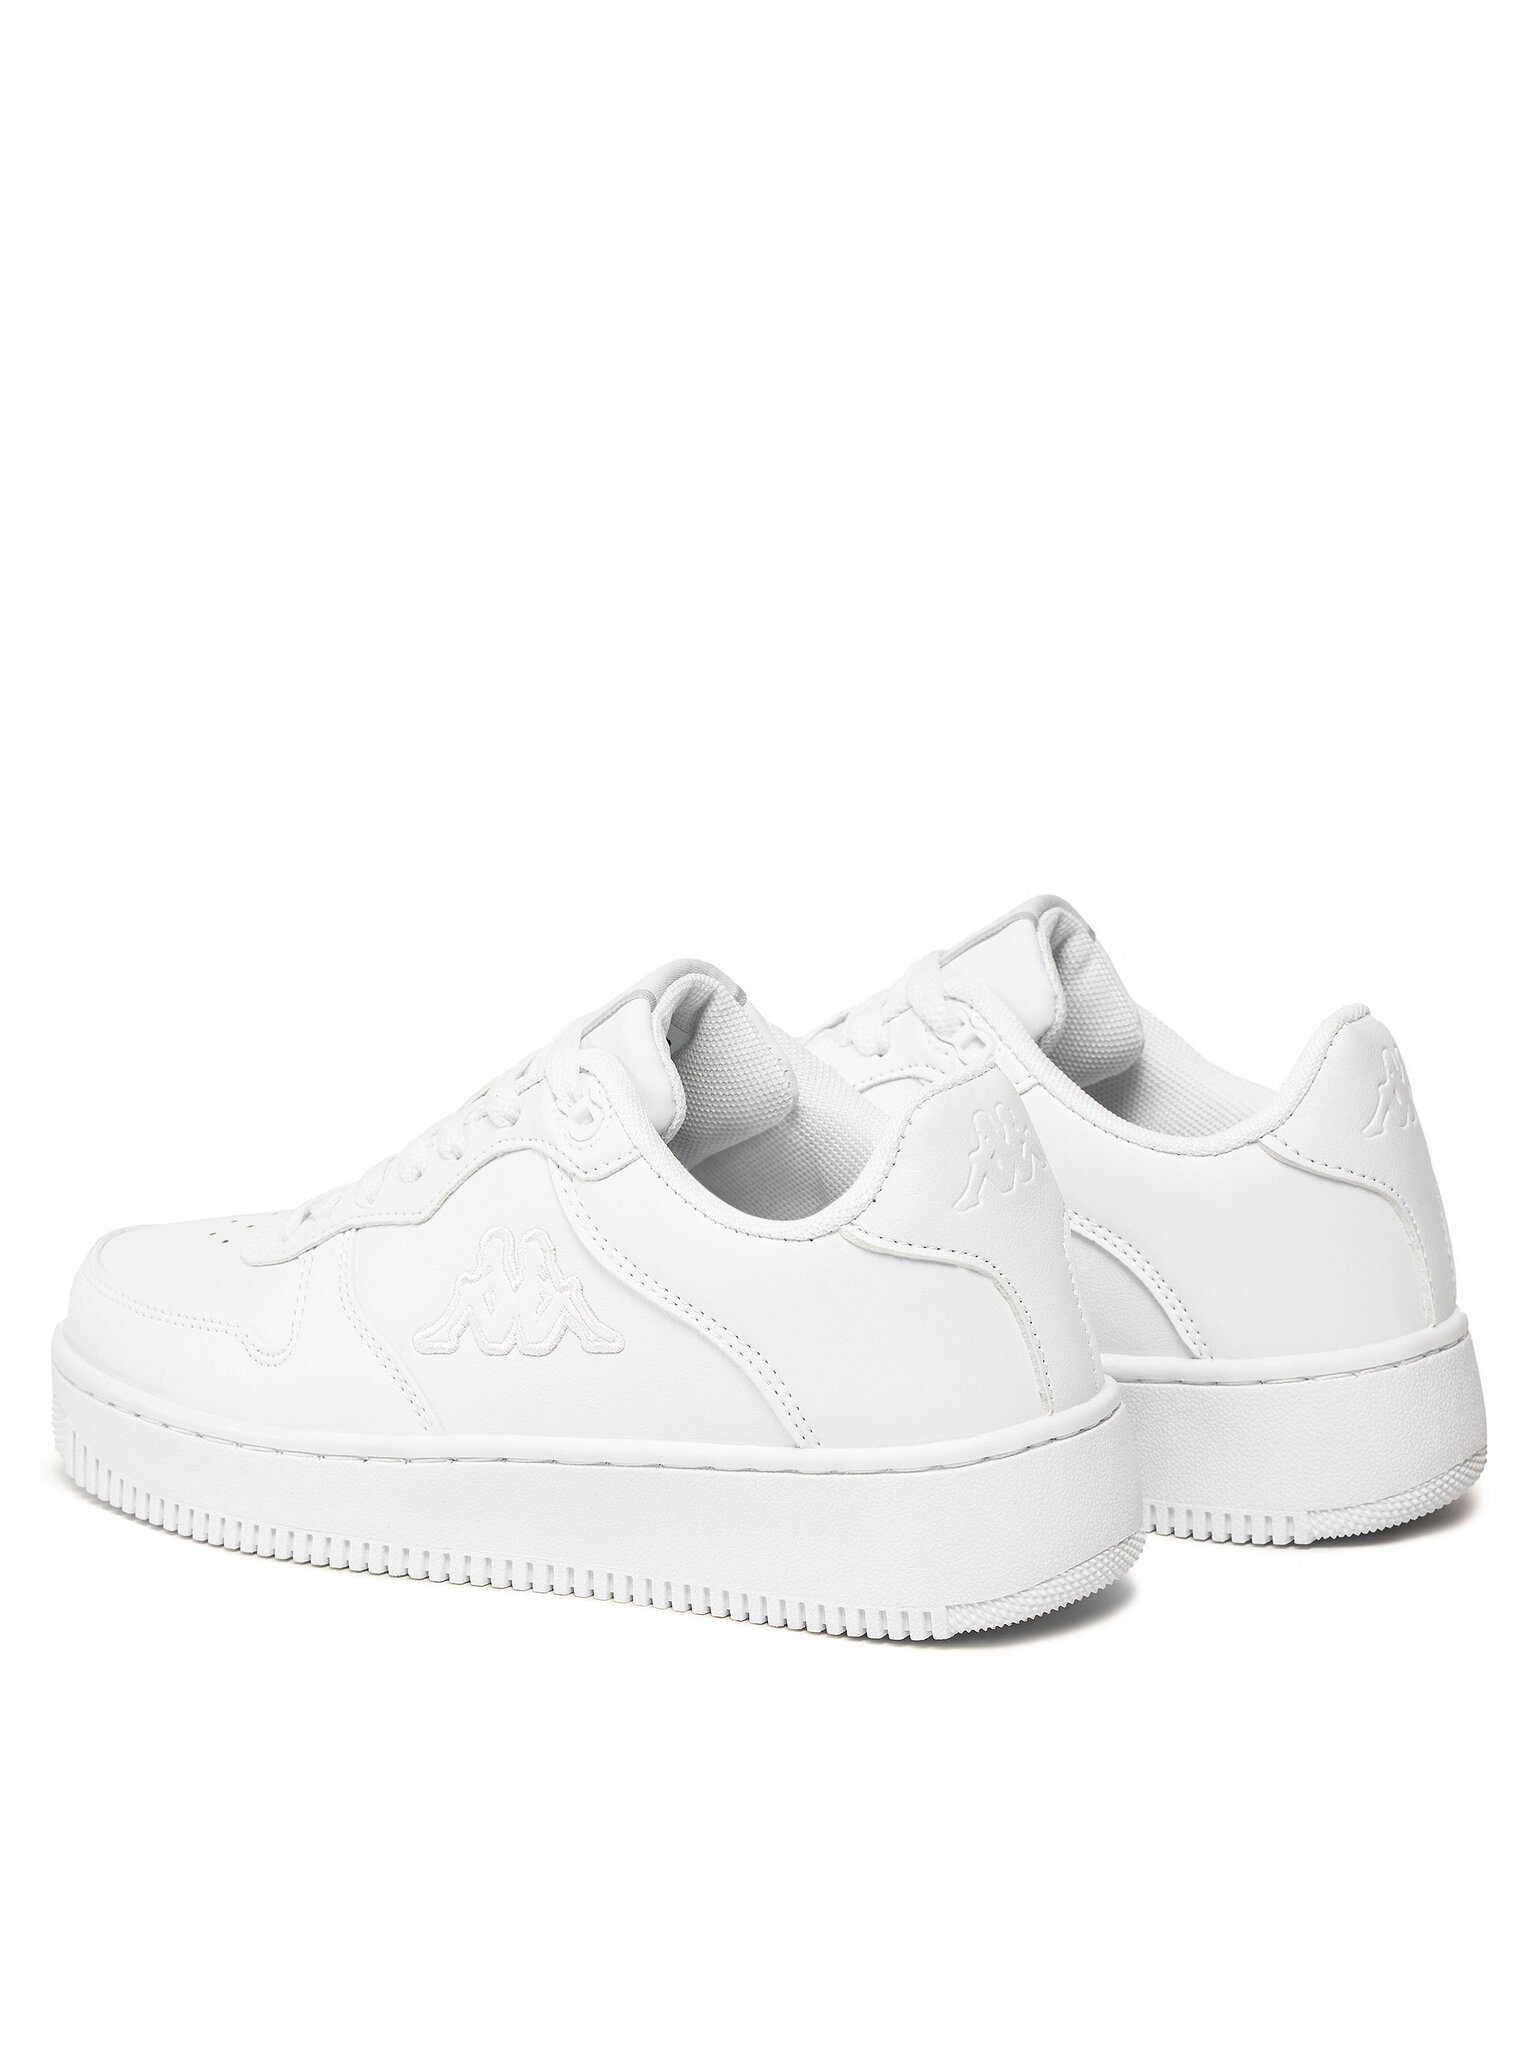 Kappa Sneakers 32193CW White 001 Sneaker